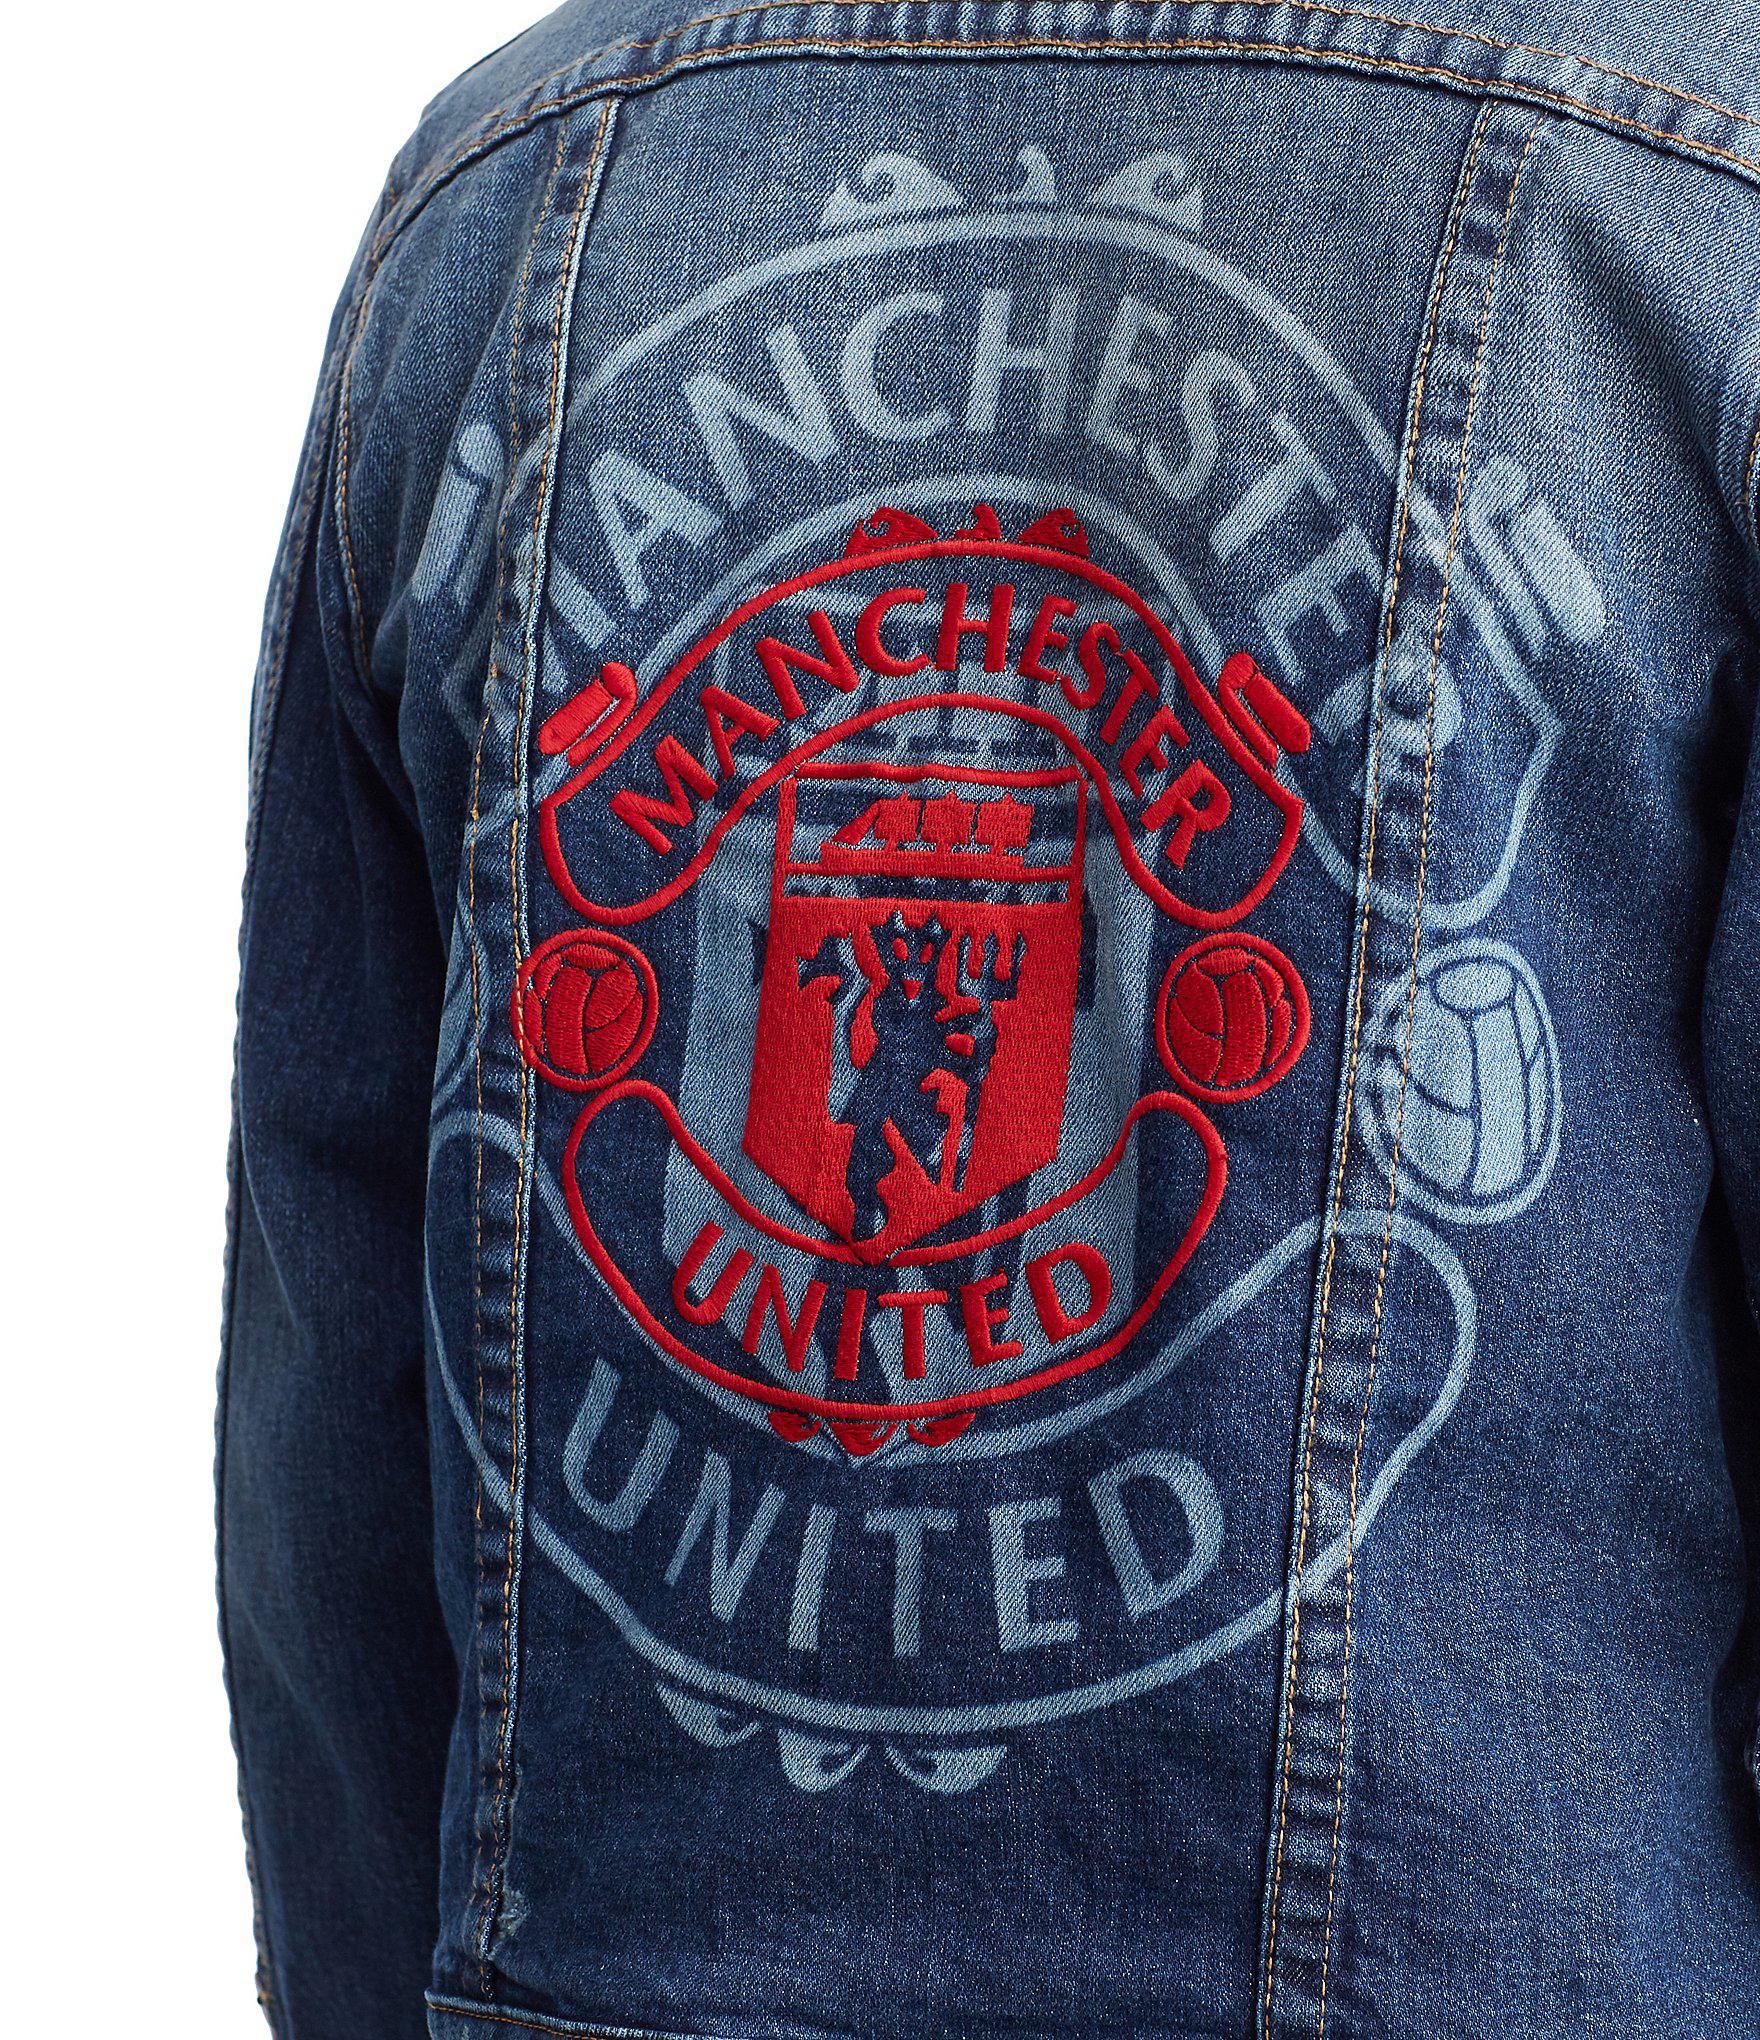 Lyst - True Religion Manchester United Denim Collection Trucker Jacket